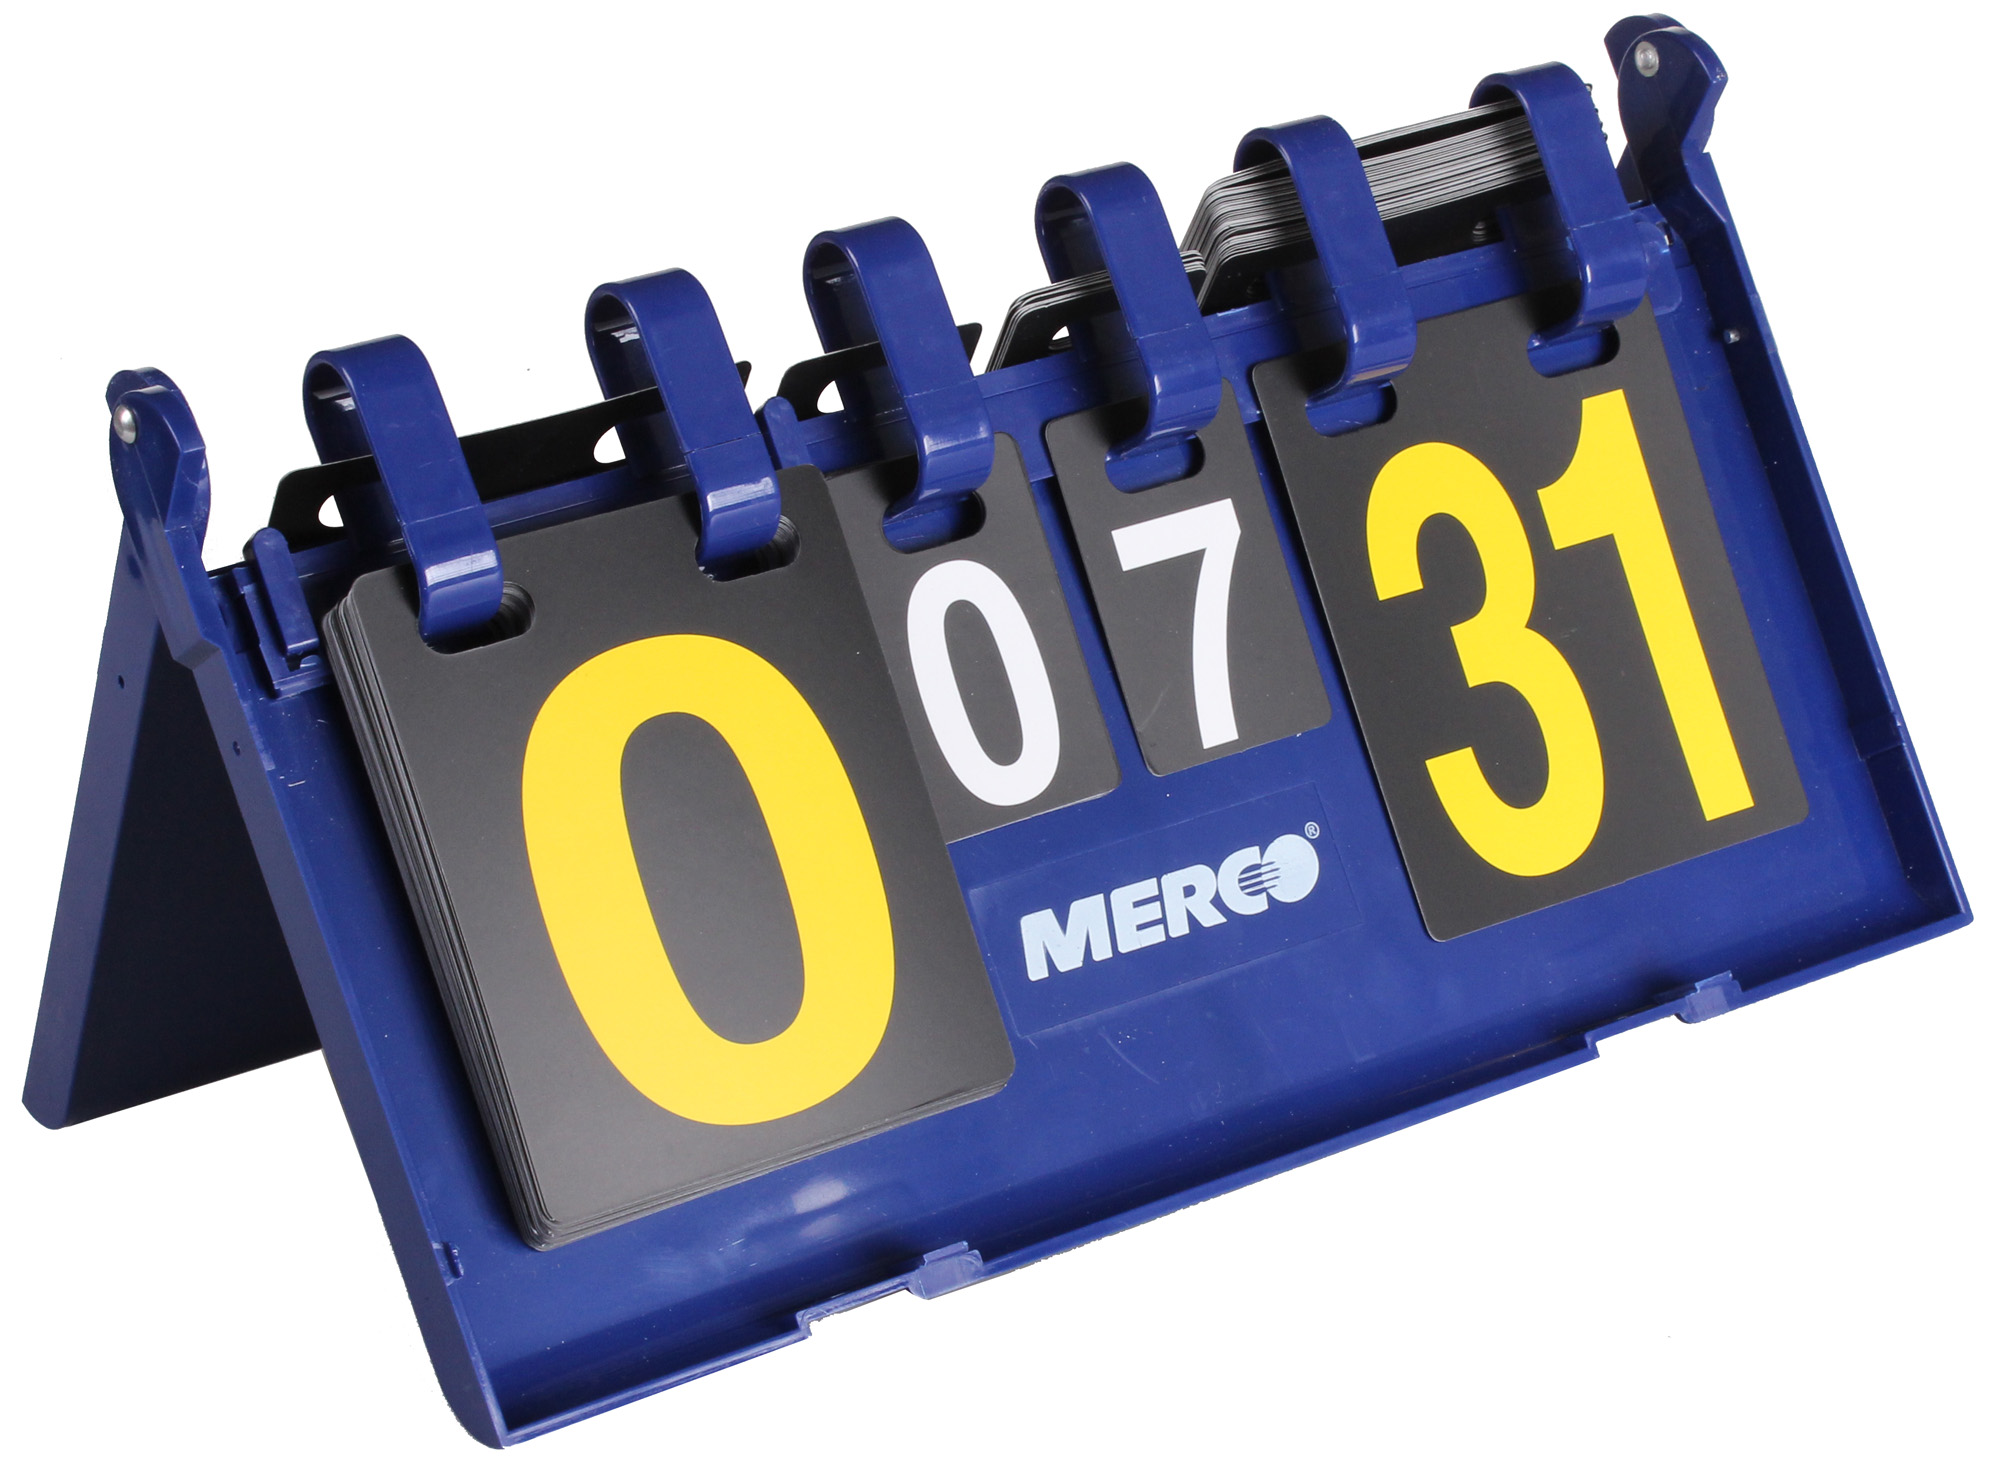 Merco Table Ukazovateľ skóre plast 0-31 bodov, 0-7 setov